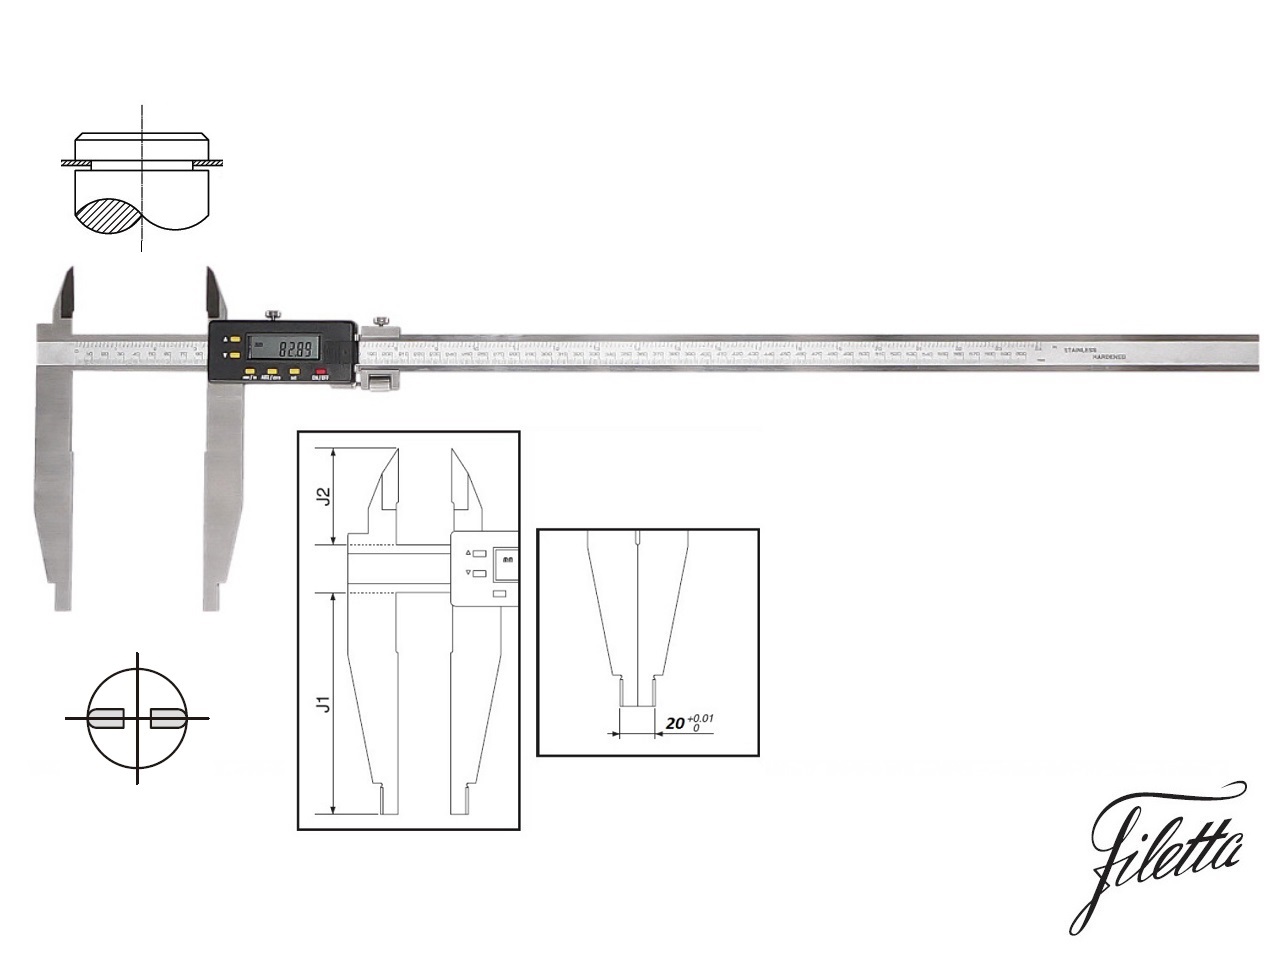 Digitální posuvné měřítko Filetta 0-1000/300 mm s měřicími nožíky pro vnější měření